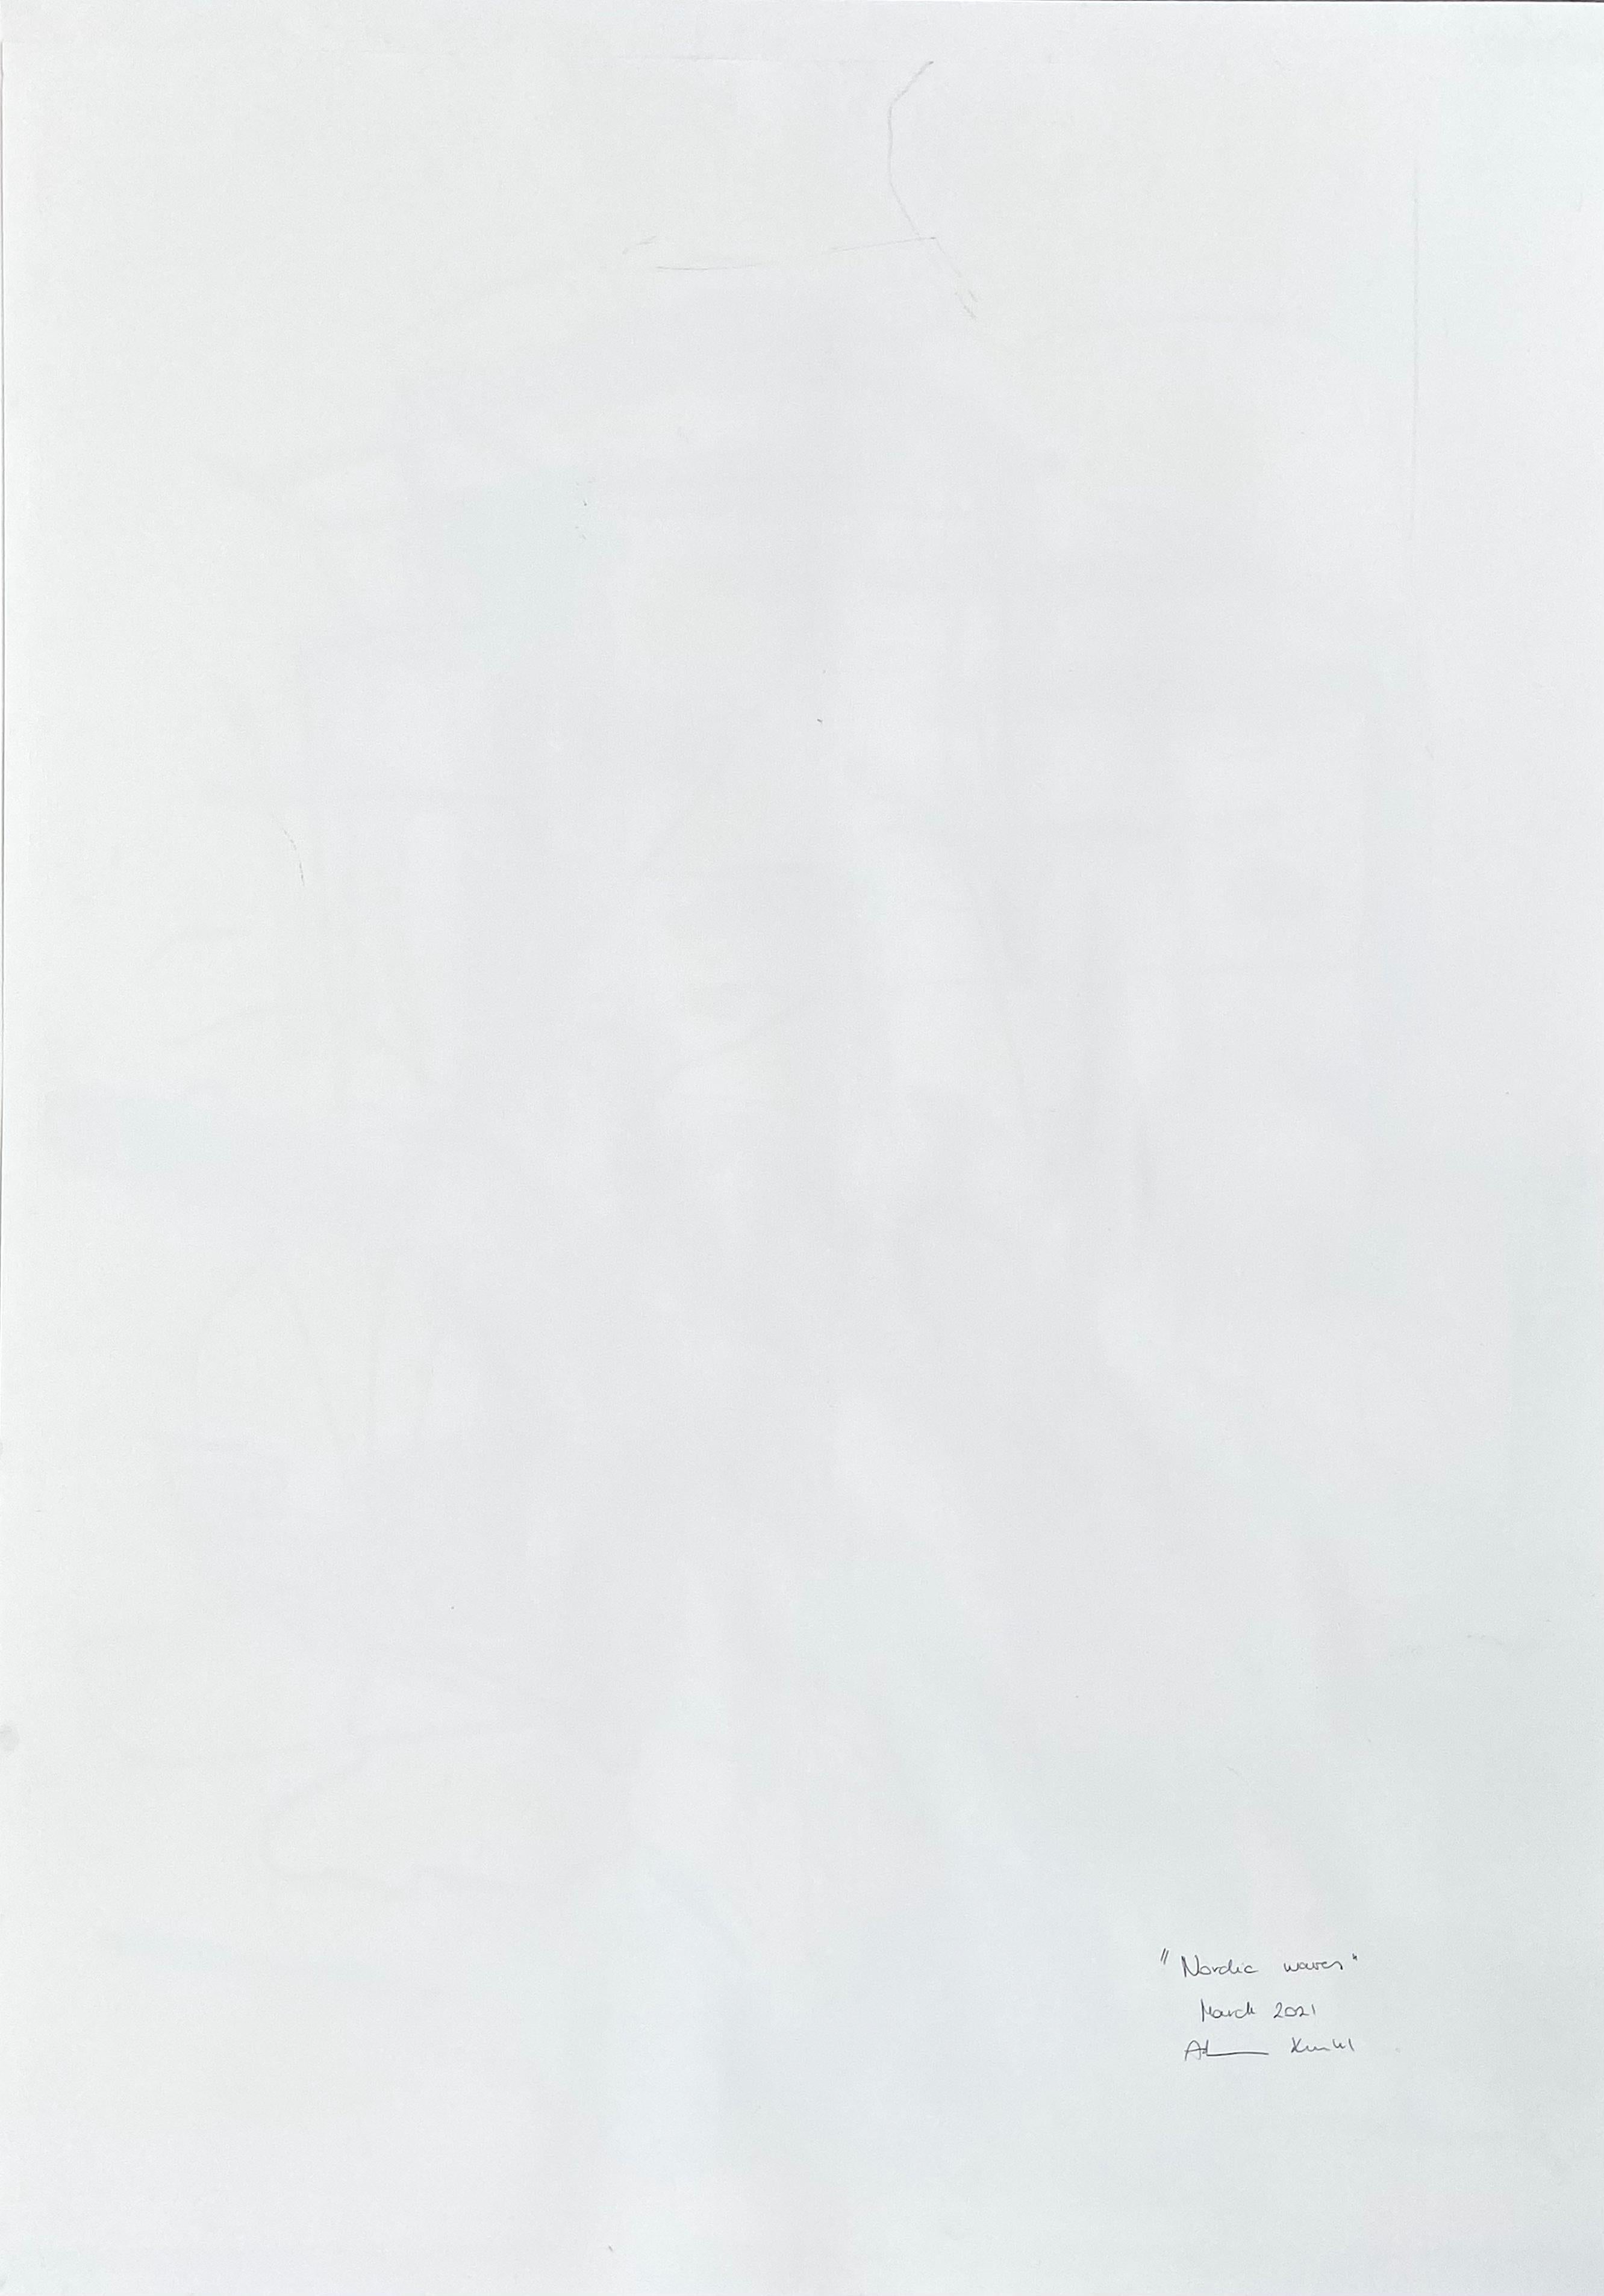 Waves nordiques (peinture abstraite)

Acrylique, fusain, pastel à l'huile et graphite sur papier - Non encadré.

Œuvre exclusive à IdeelArt.

Les peintures d'Adrienn Krahl expriment un sens profond du drame et du poids émotionnel. Krahl travaille à